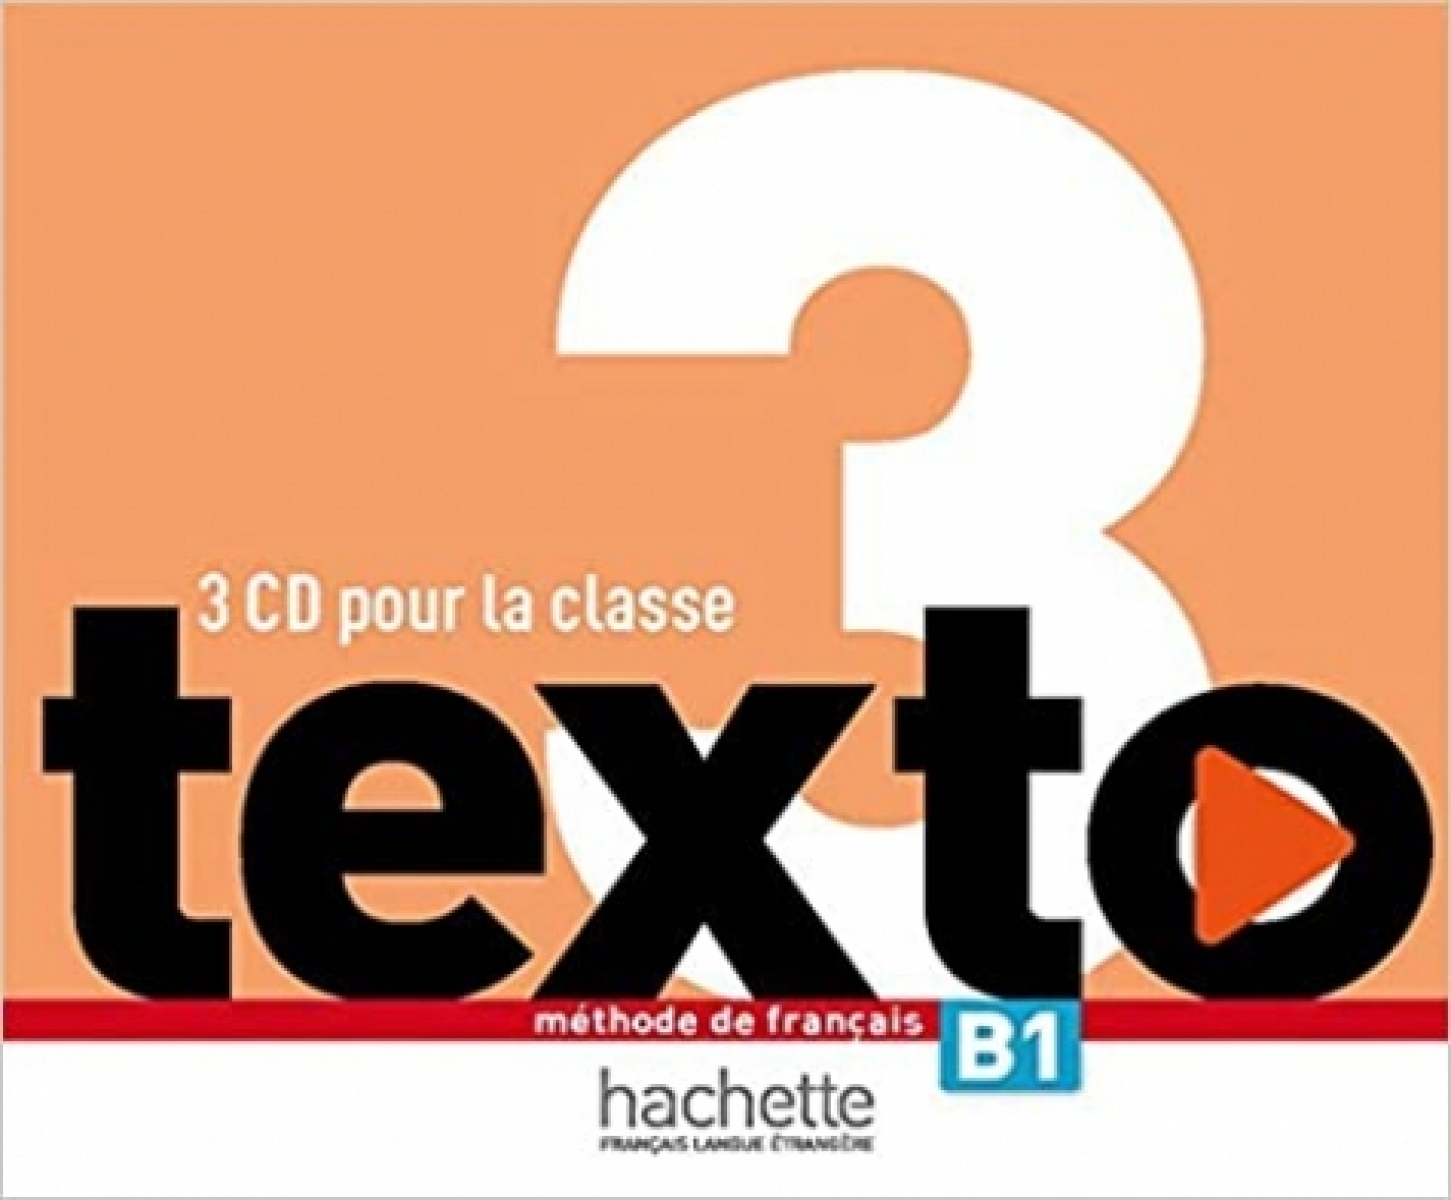 Le Bougnec, J-T. et al. Texto 3 CD audio classe (x2) 